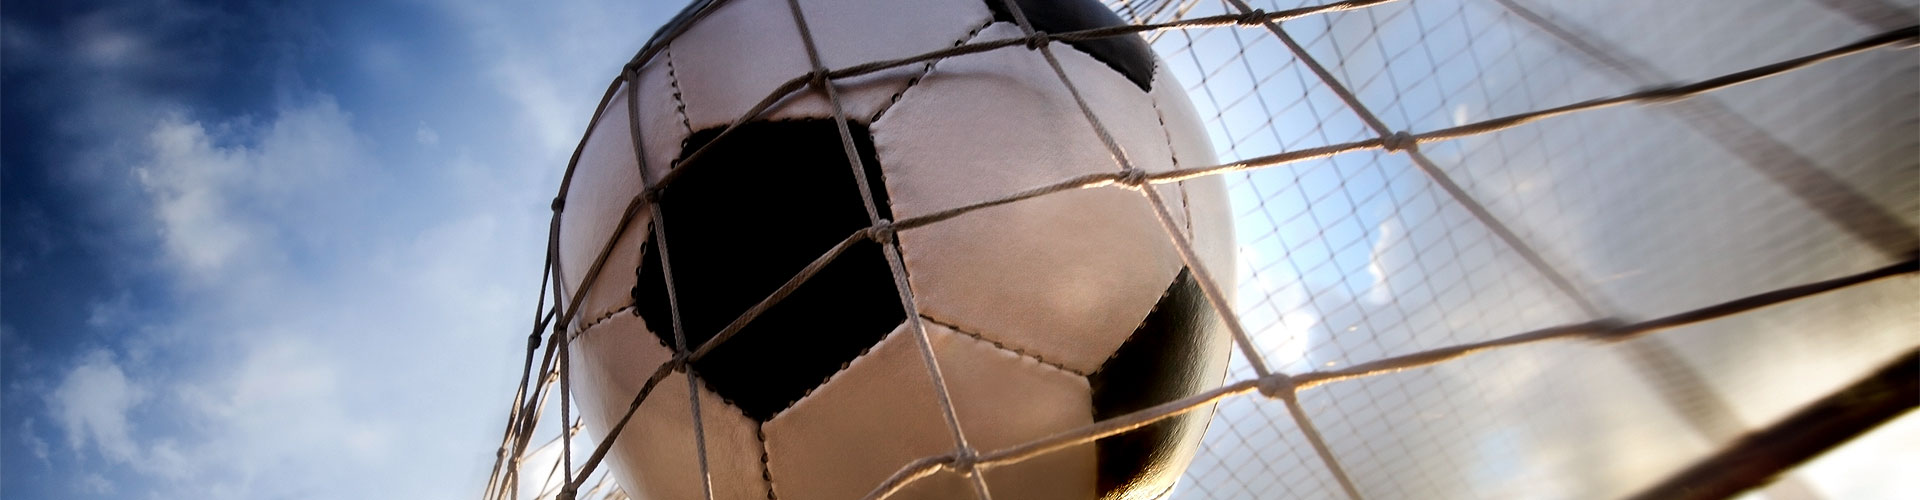 Ver la Eurocopa 2020 de fútbol en vivo en Bordeje
        
        


	    
           
           


          
          
          
